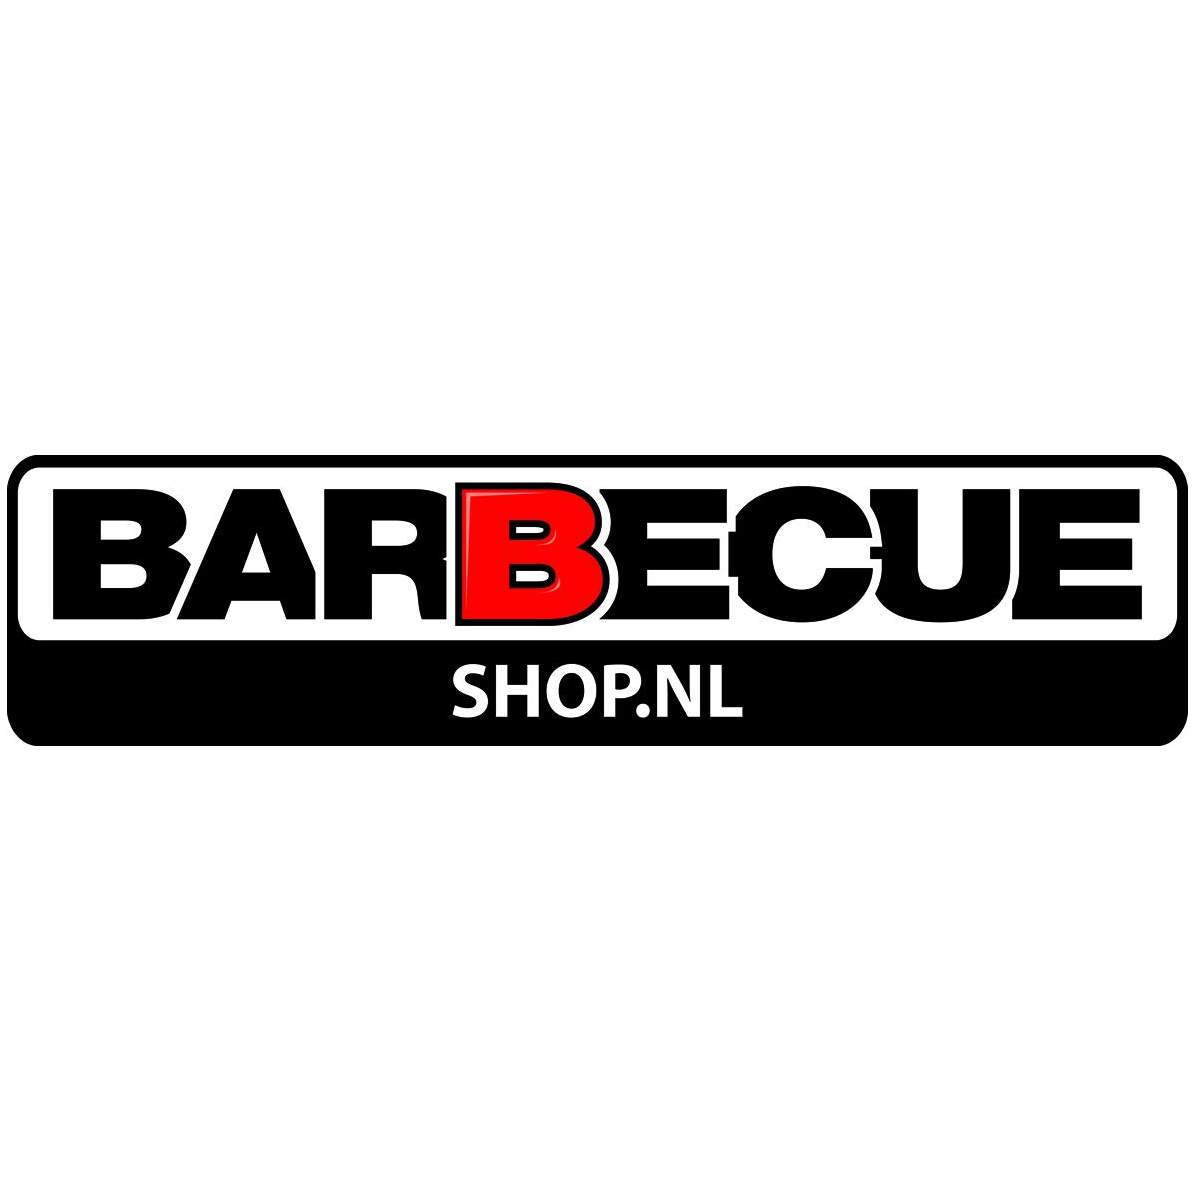 Barbecueshop.nl reviews, beoordelingen en ervaringen